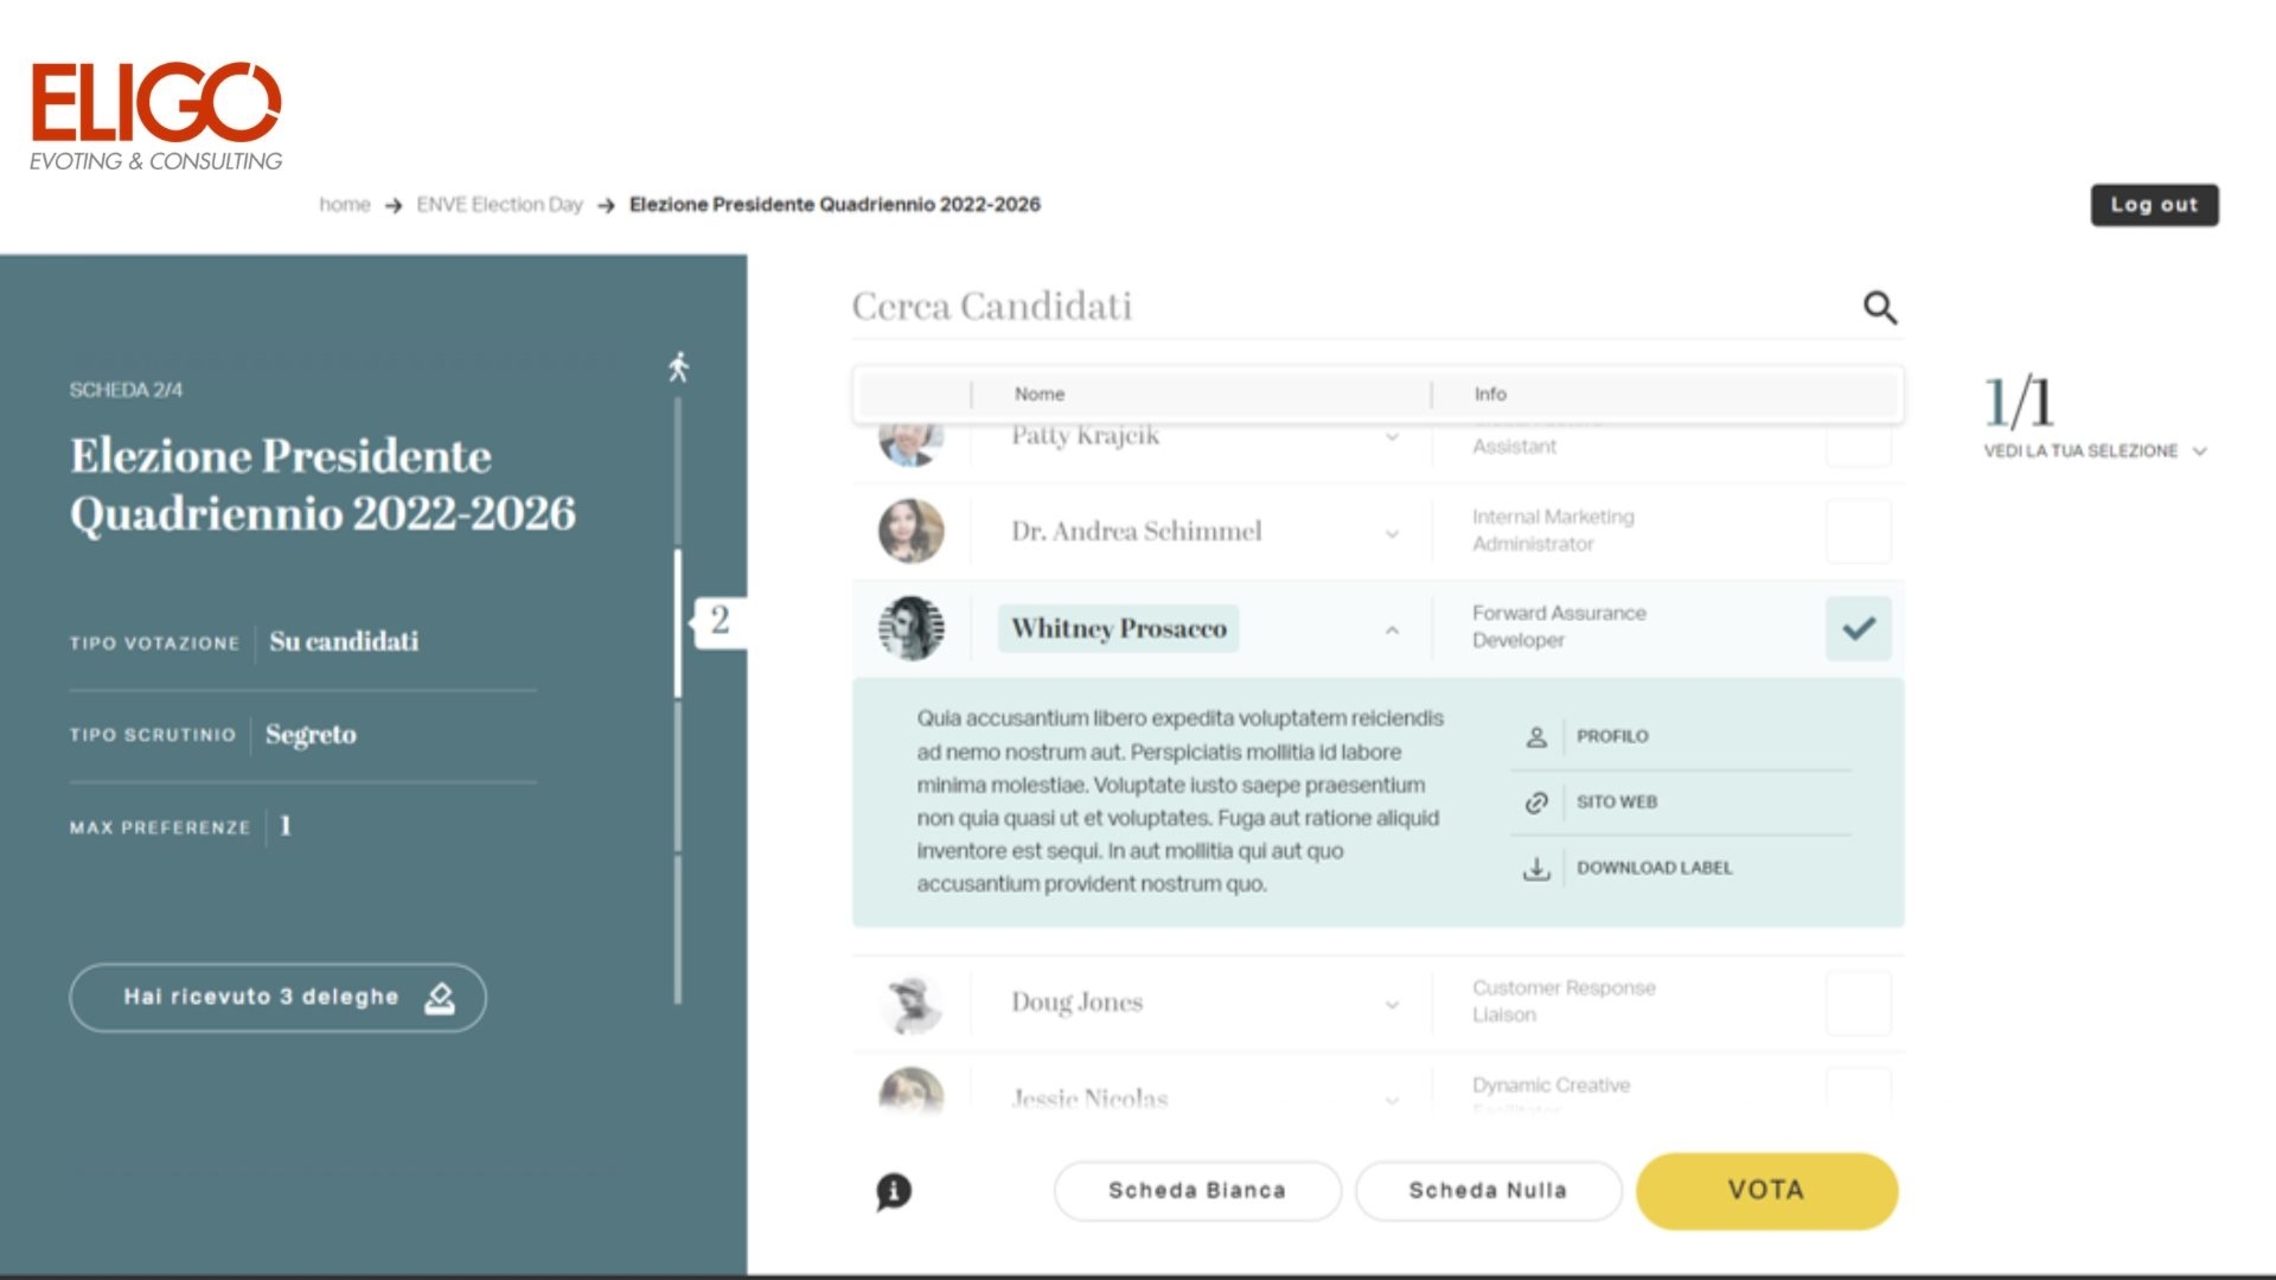 Eligo Next: Képernyőkép az Eligo Next elektronikus és online szavazási platform felületéről